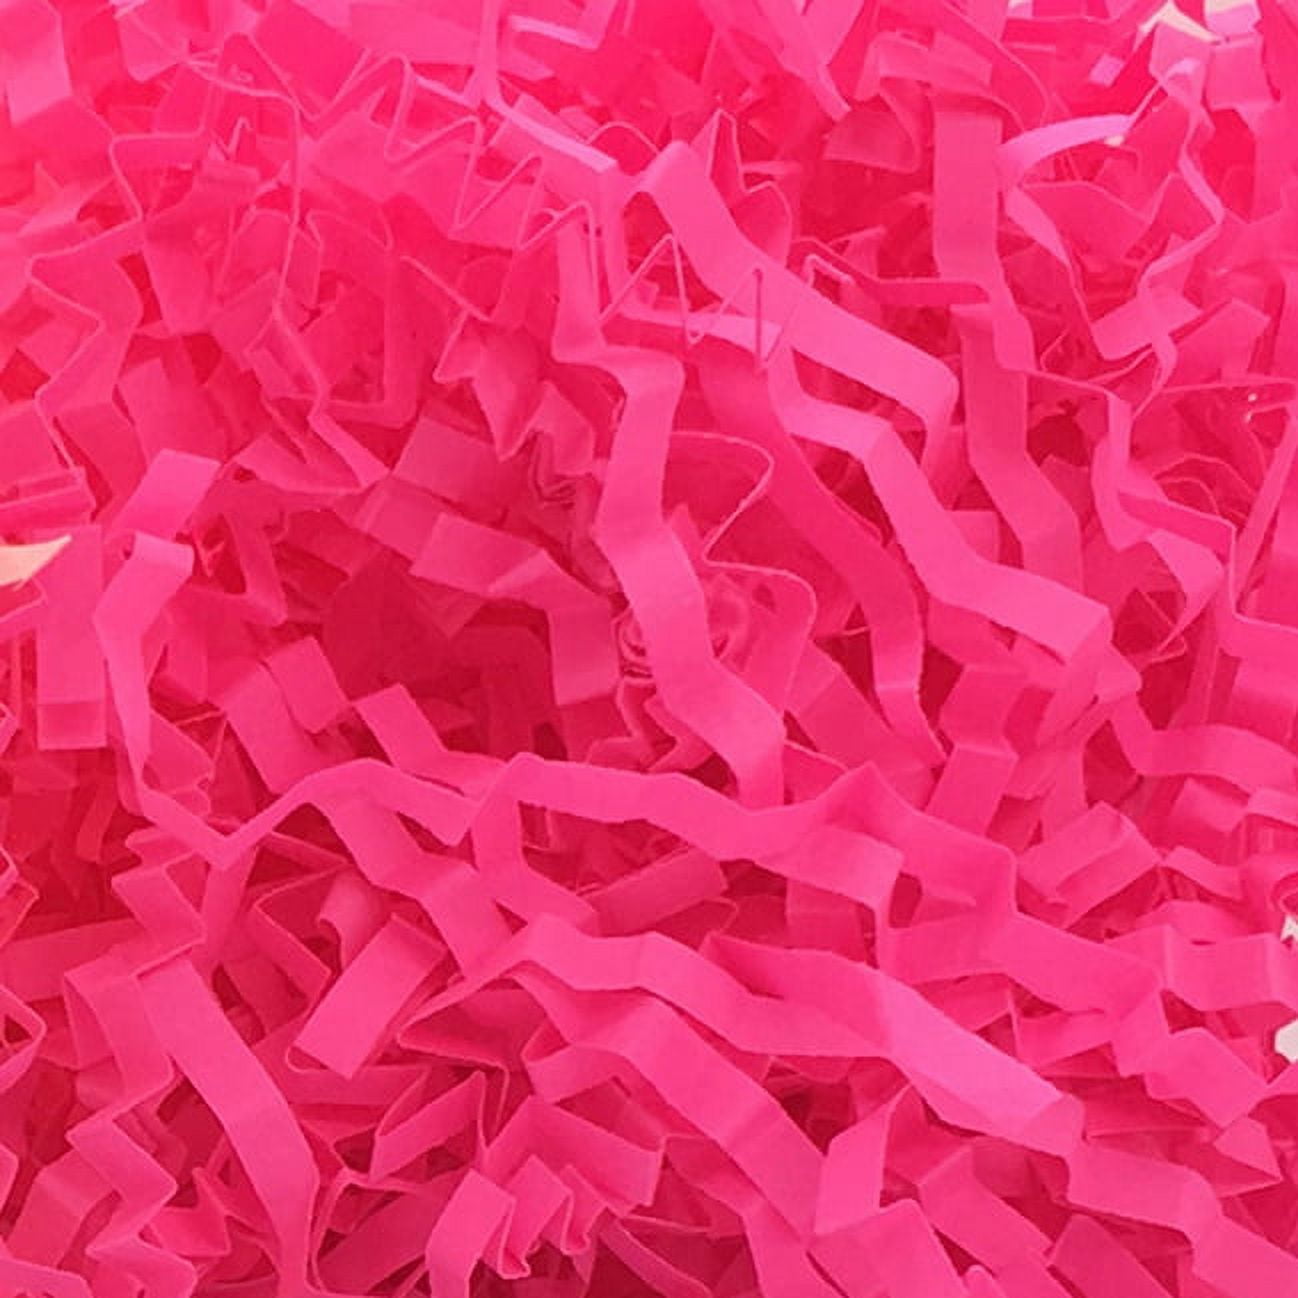 Light Pink Color Tissue Paper Shred, 18 oz. Bag